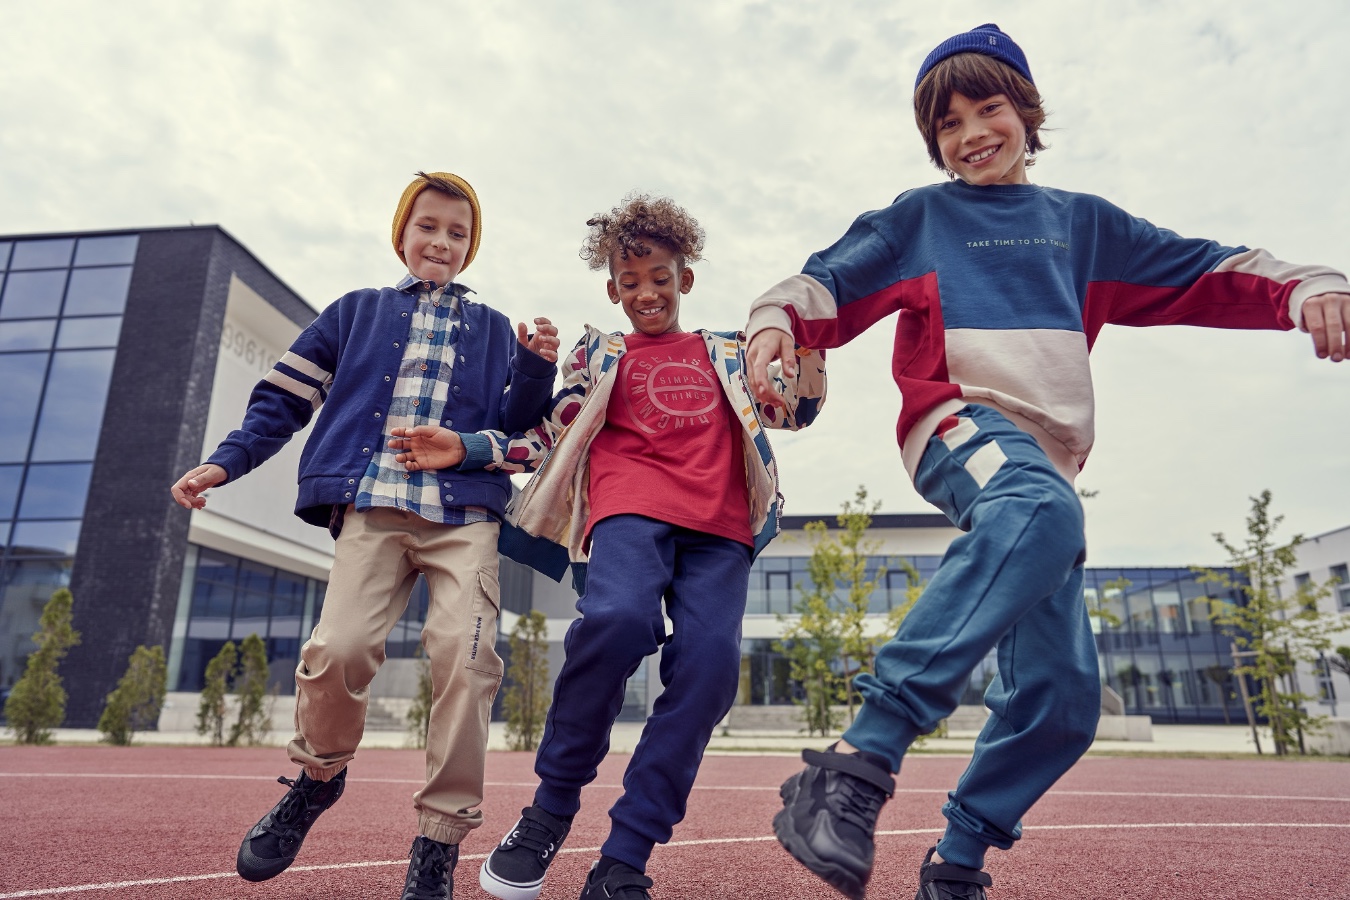 Powrót do szkoły na sportowo! Sprawdź, jak zachęcić dzieci do aktywności fizycznej